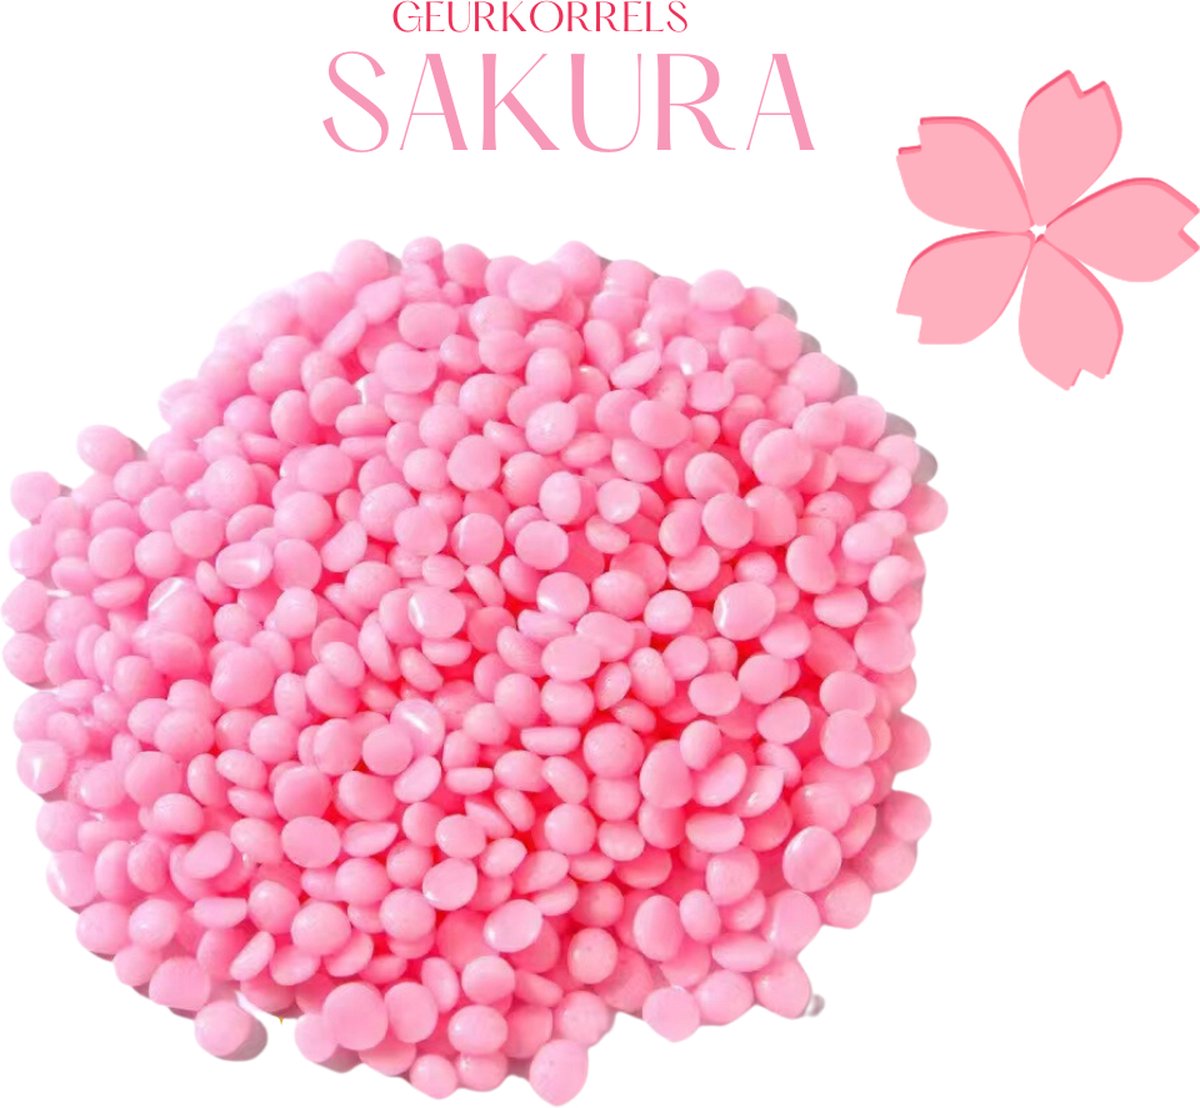 Natuurlijke Geurkorrels Sakura - geurkorrels stofzuiger - geurparels - geurbooster - inclusief organzakje!